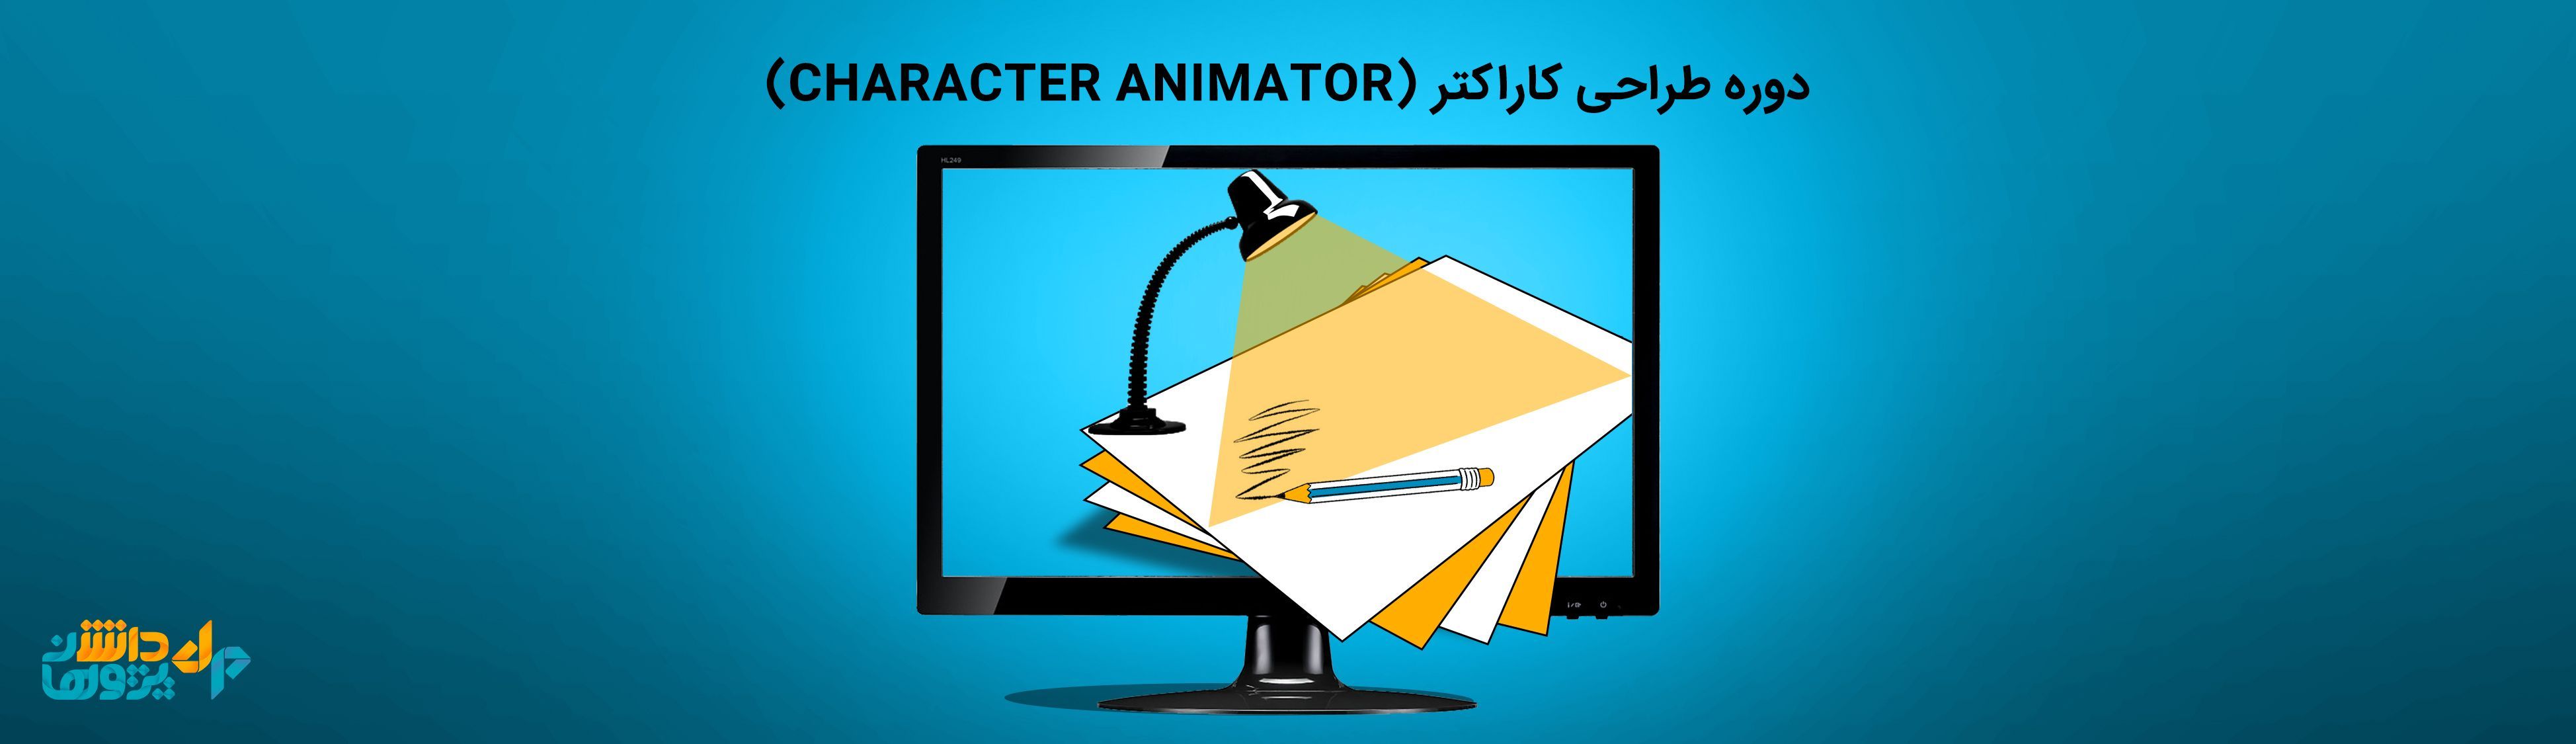 دوره طراحی کارکتر (character animator)